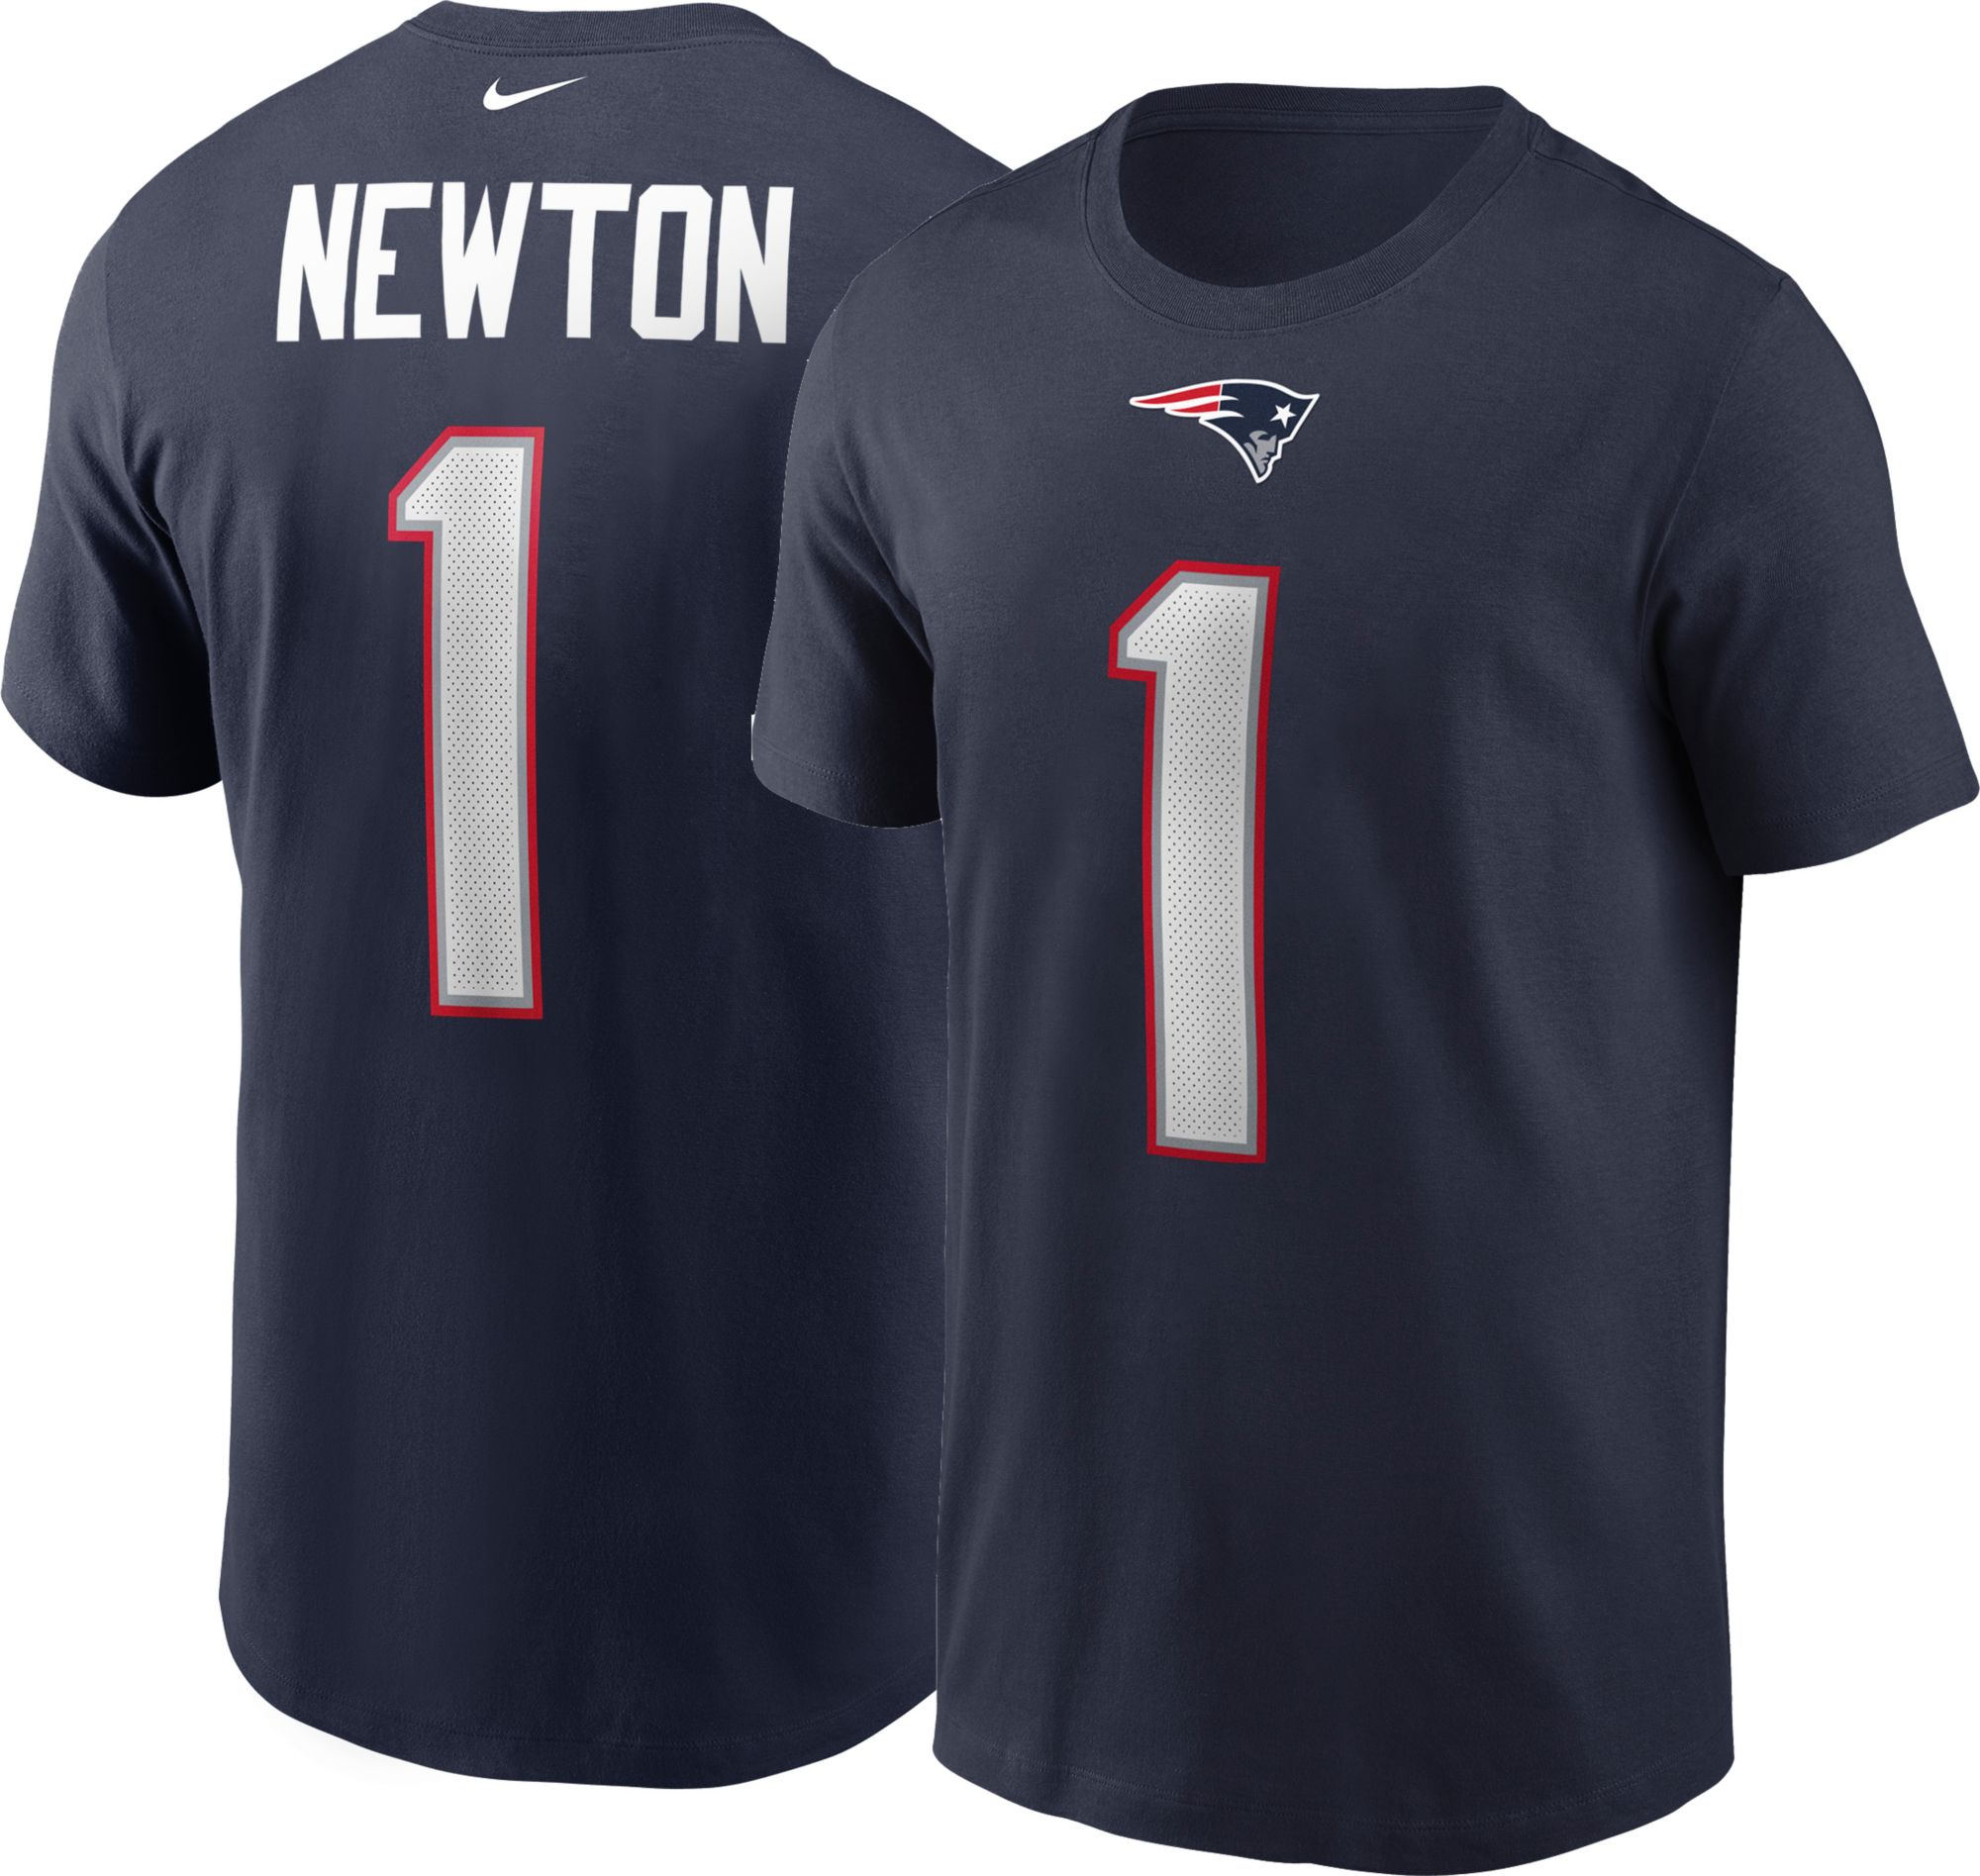 patriots newton shirt